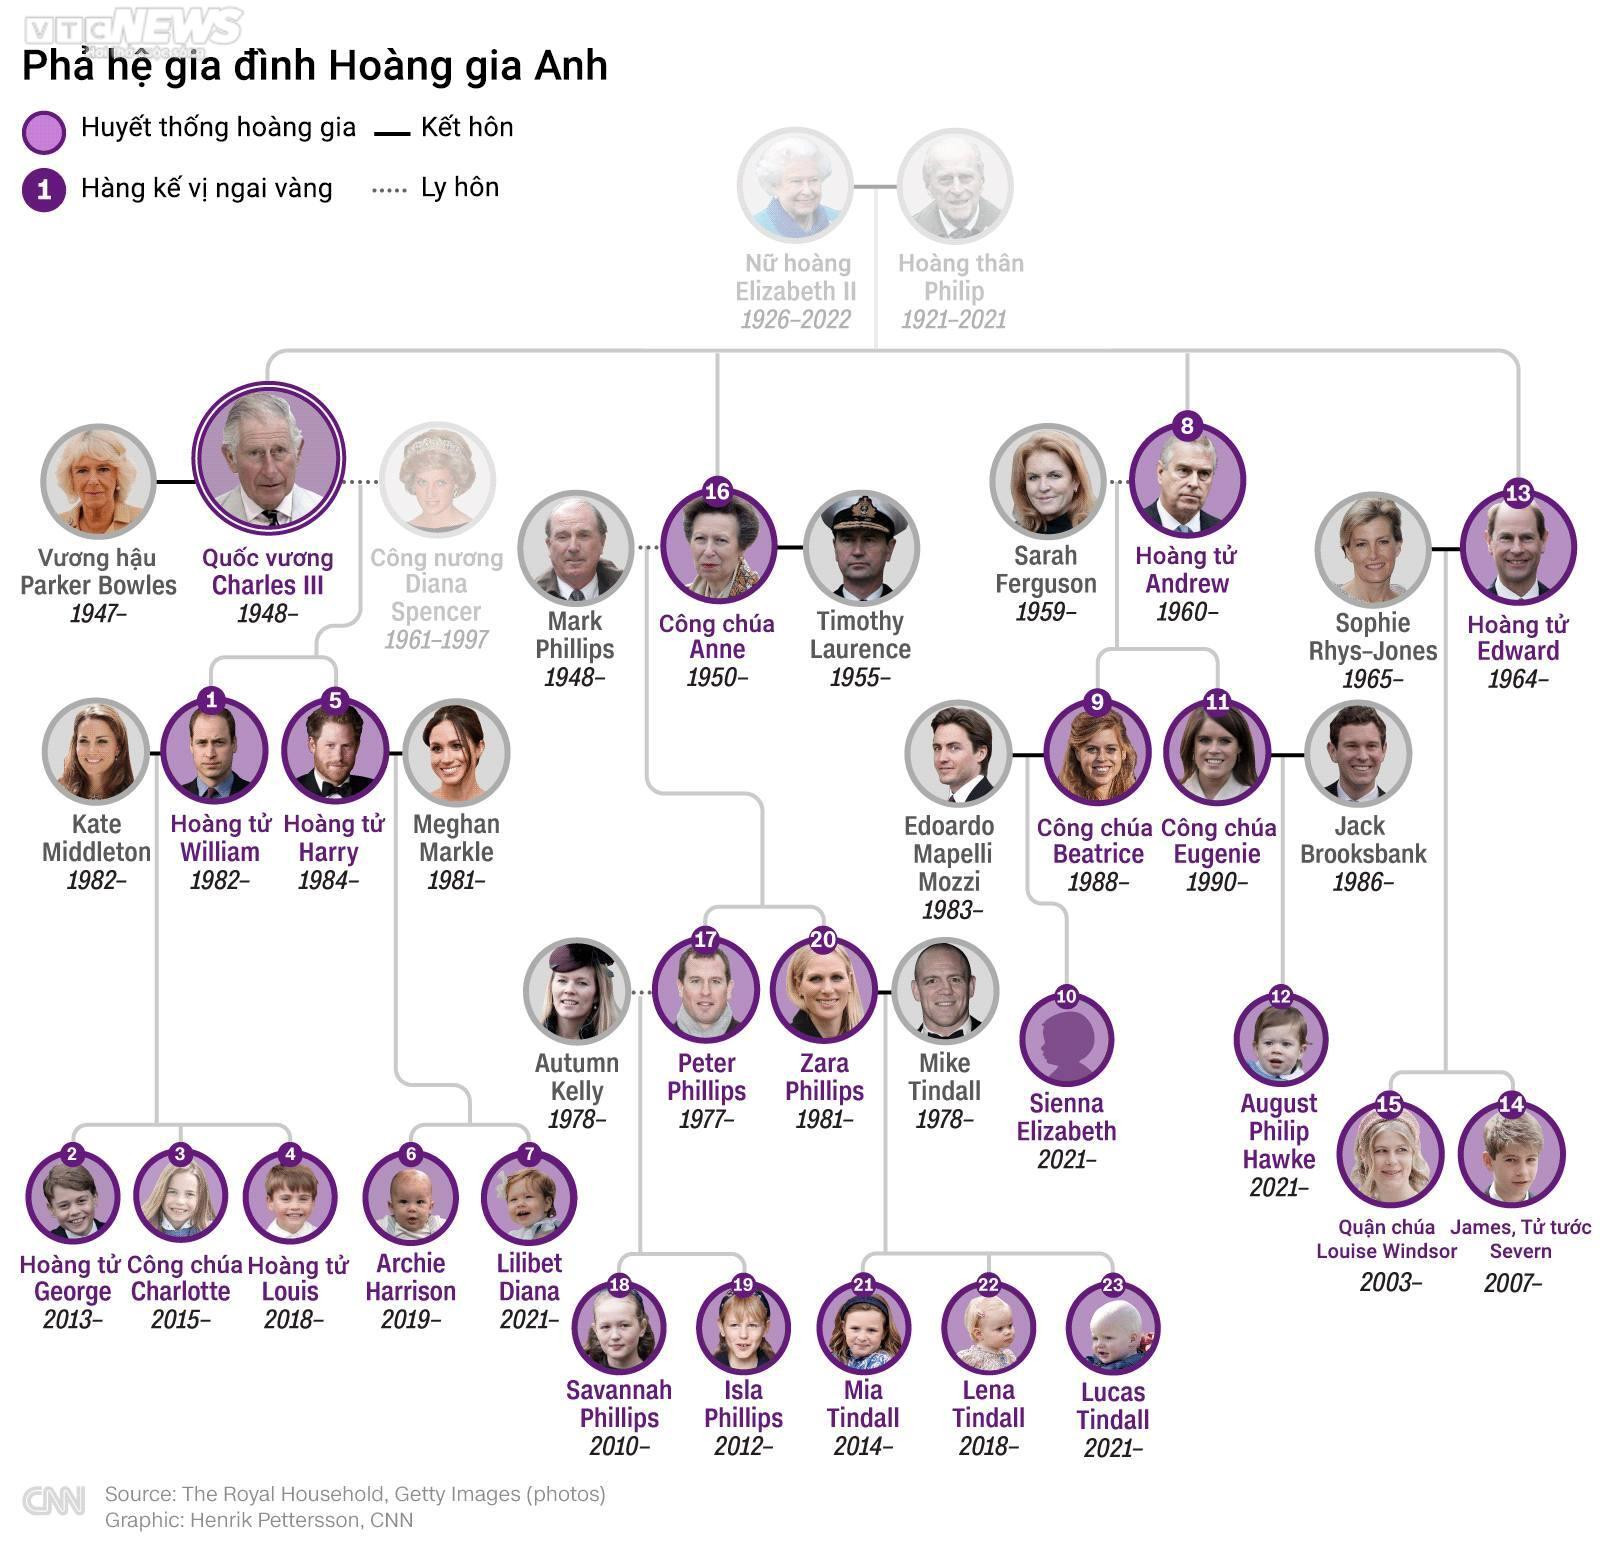 Infographic: Thứ bậc kế vị ngai vàng sau khi Nữ hoàng Anh qua đời - 1